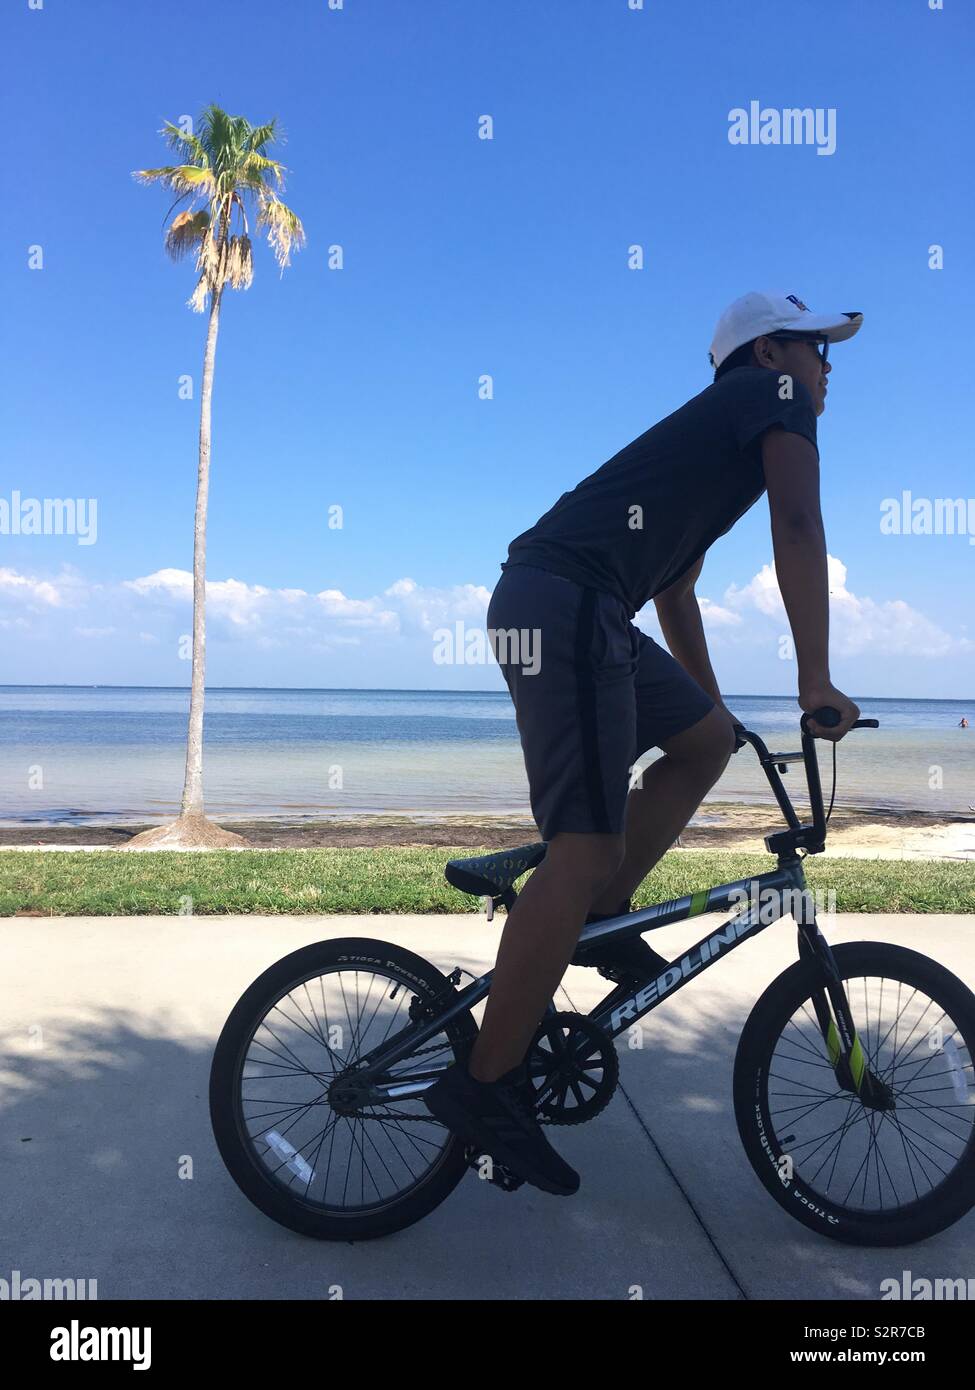 L'homme sur le vélo à l'aide de vélo passé palm tree Banque D'Images